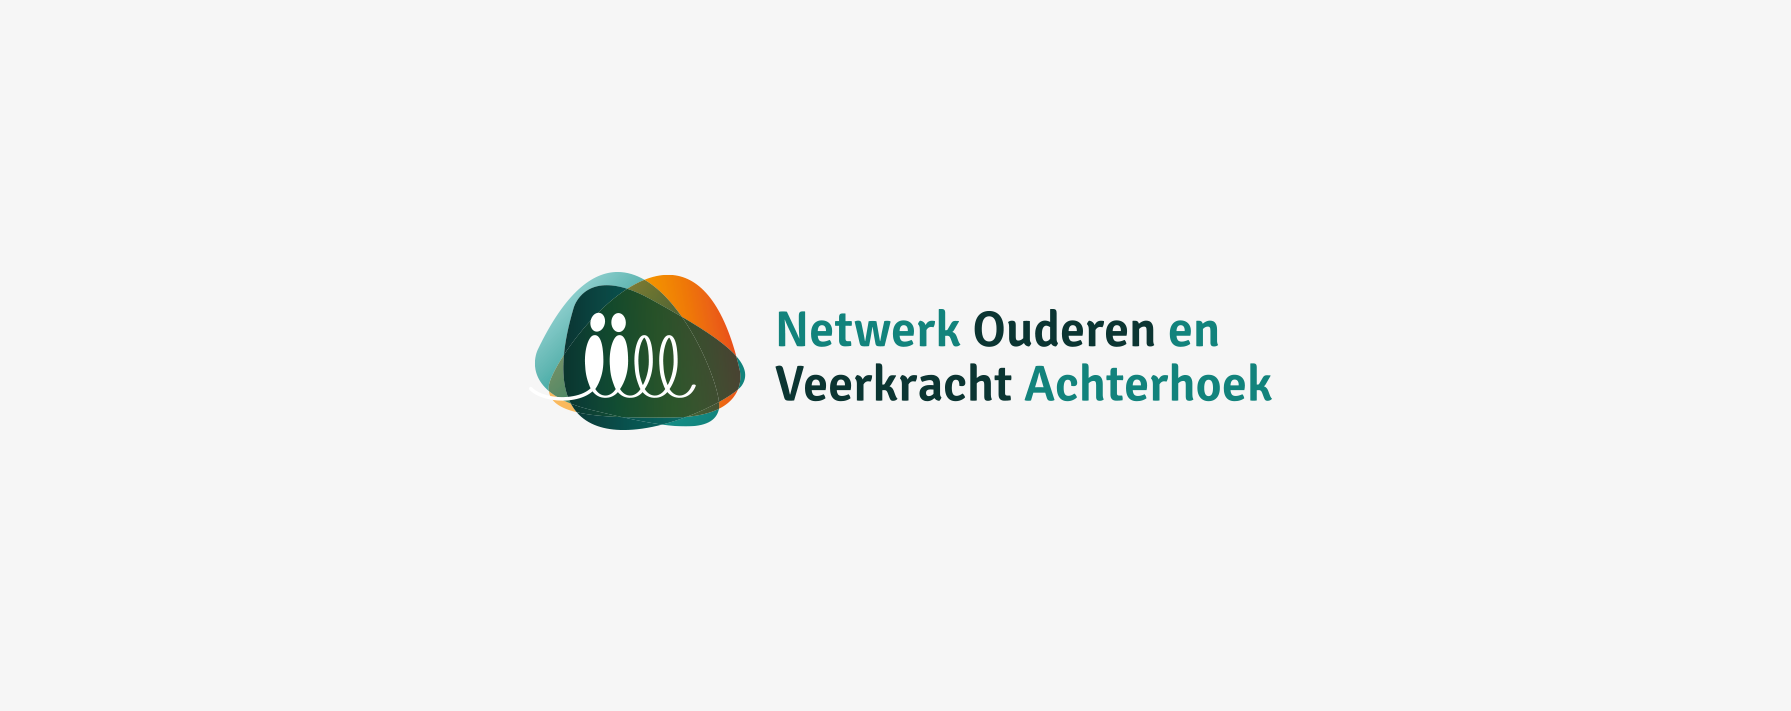 Logo Achterhoek, de grootste vereniging van Nederland